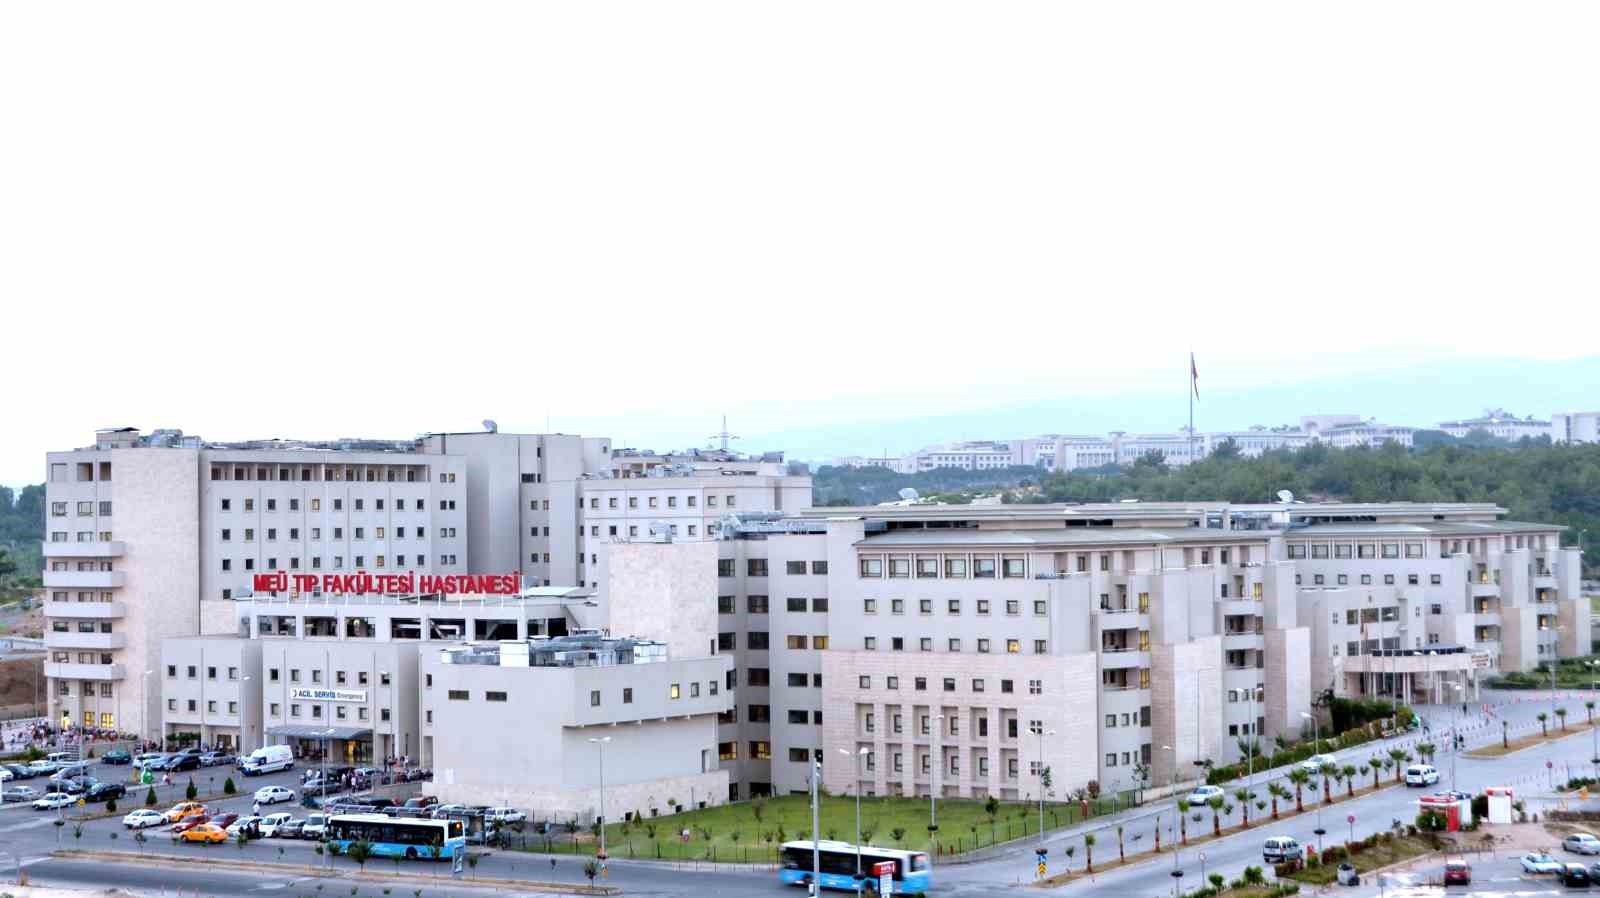 MEÜ Tıp Fakültesi Hastanesine 530 yaralı getirildi